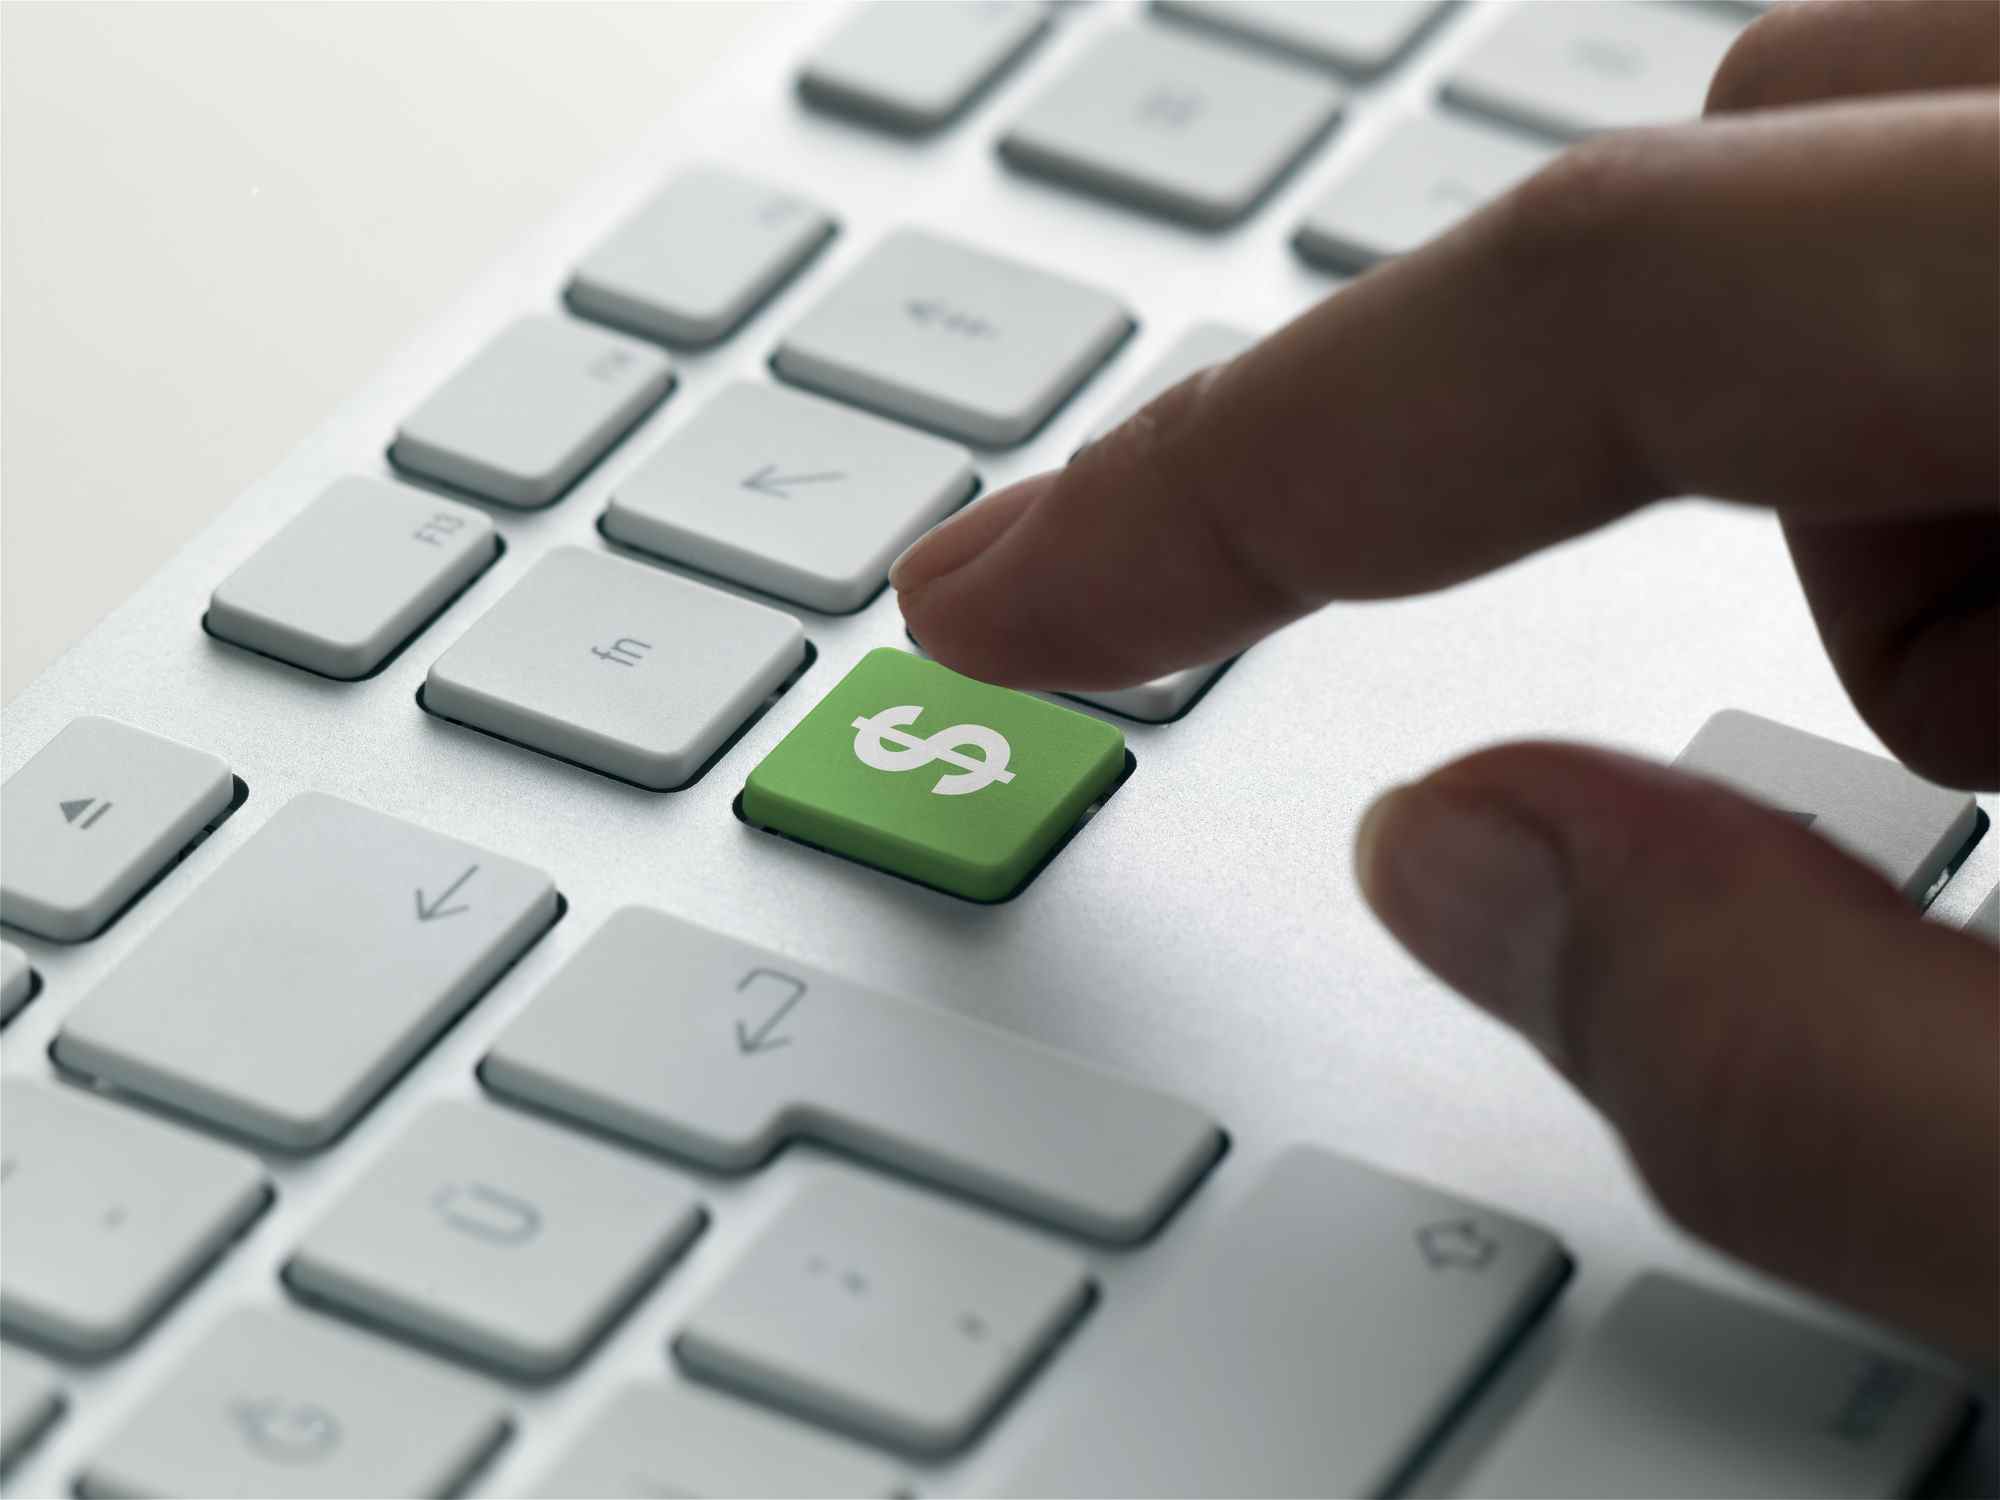 doigt sur le point d'appuyer sur la touche verte du signe dollar sur un clavier, ce qui signifie les dépenses informatiques en 2022